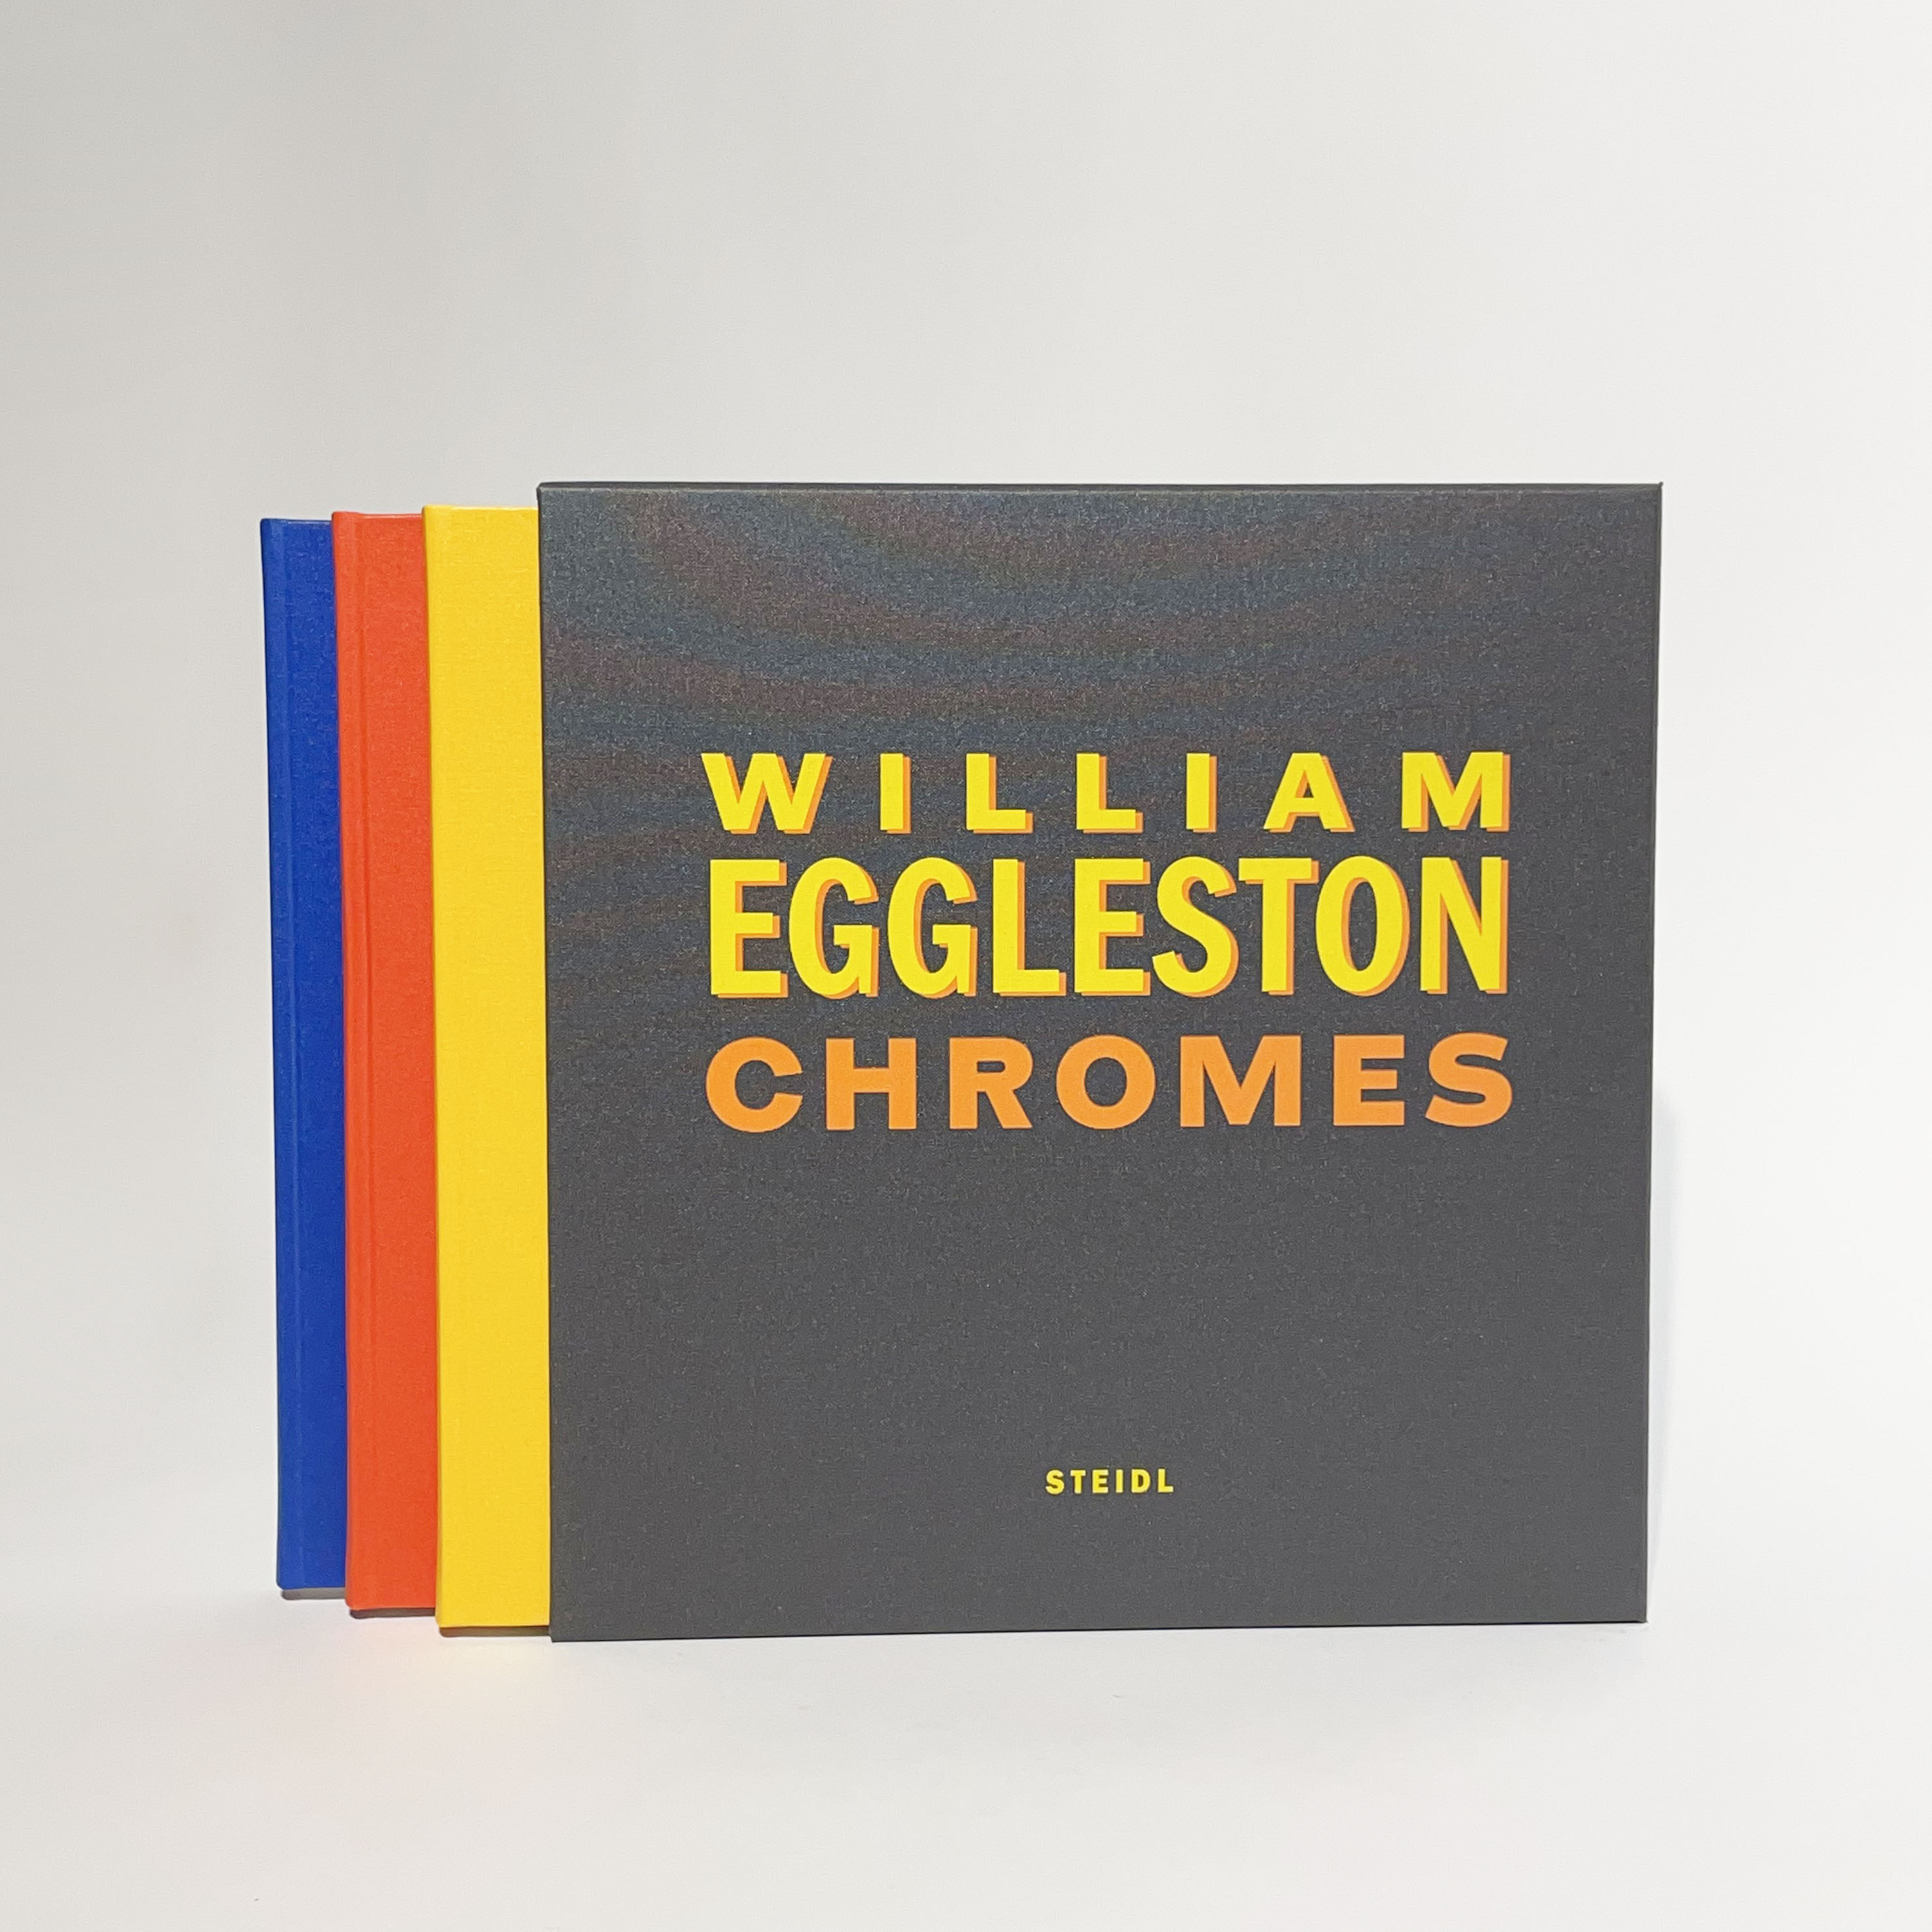 「WILLIAM EGGLESTON CHROMES / William Eggleston」メイン画像